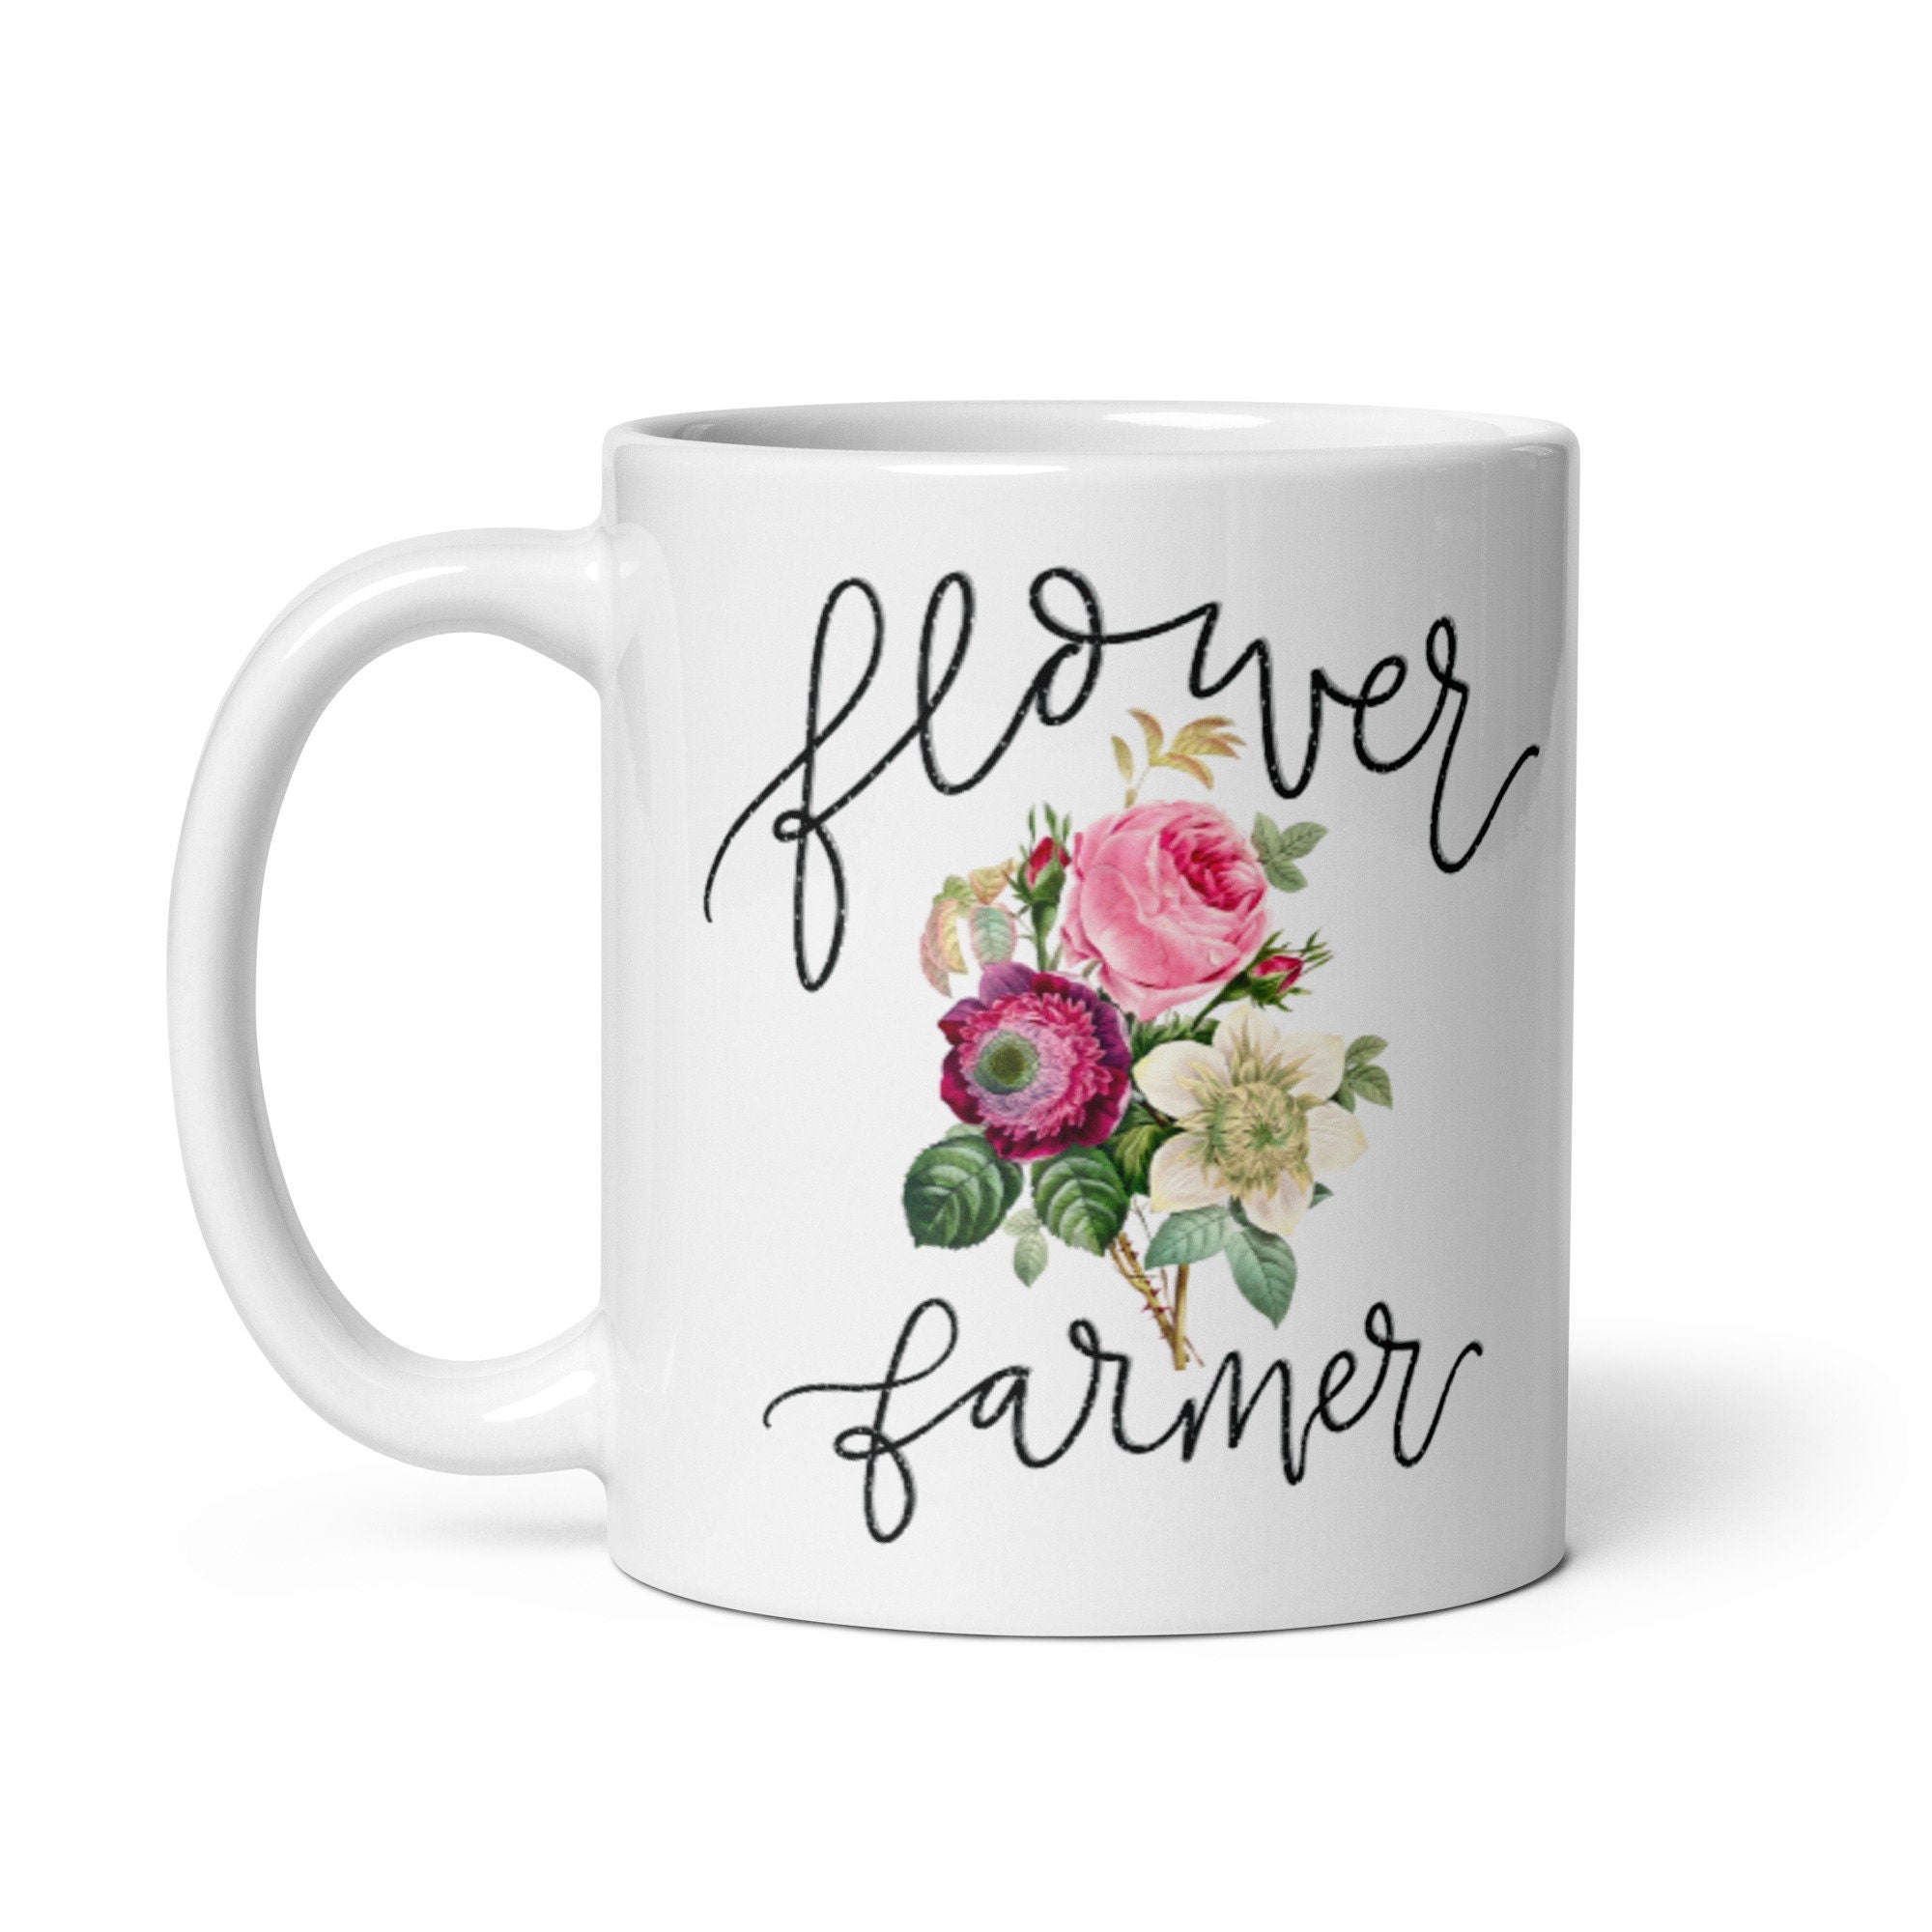 Flower Farmer Gift Idea Mug For Gardening Lover - Garden Themed Coffee Lover Present - Flower and Tea lover Redoute Artist  Bouquet gift